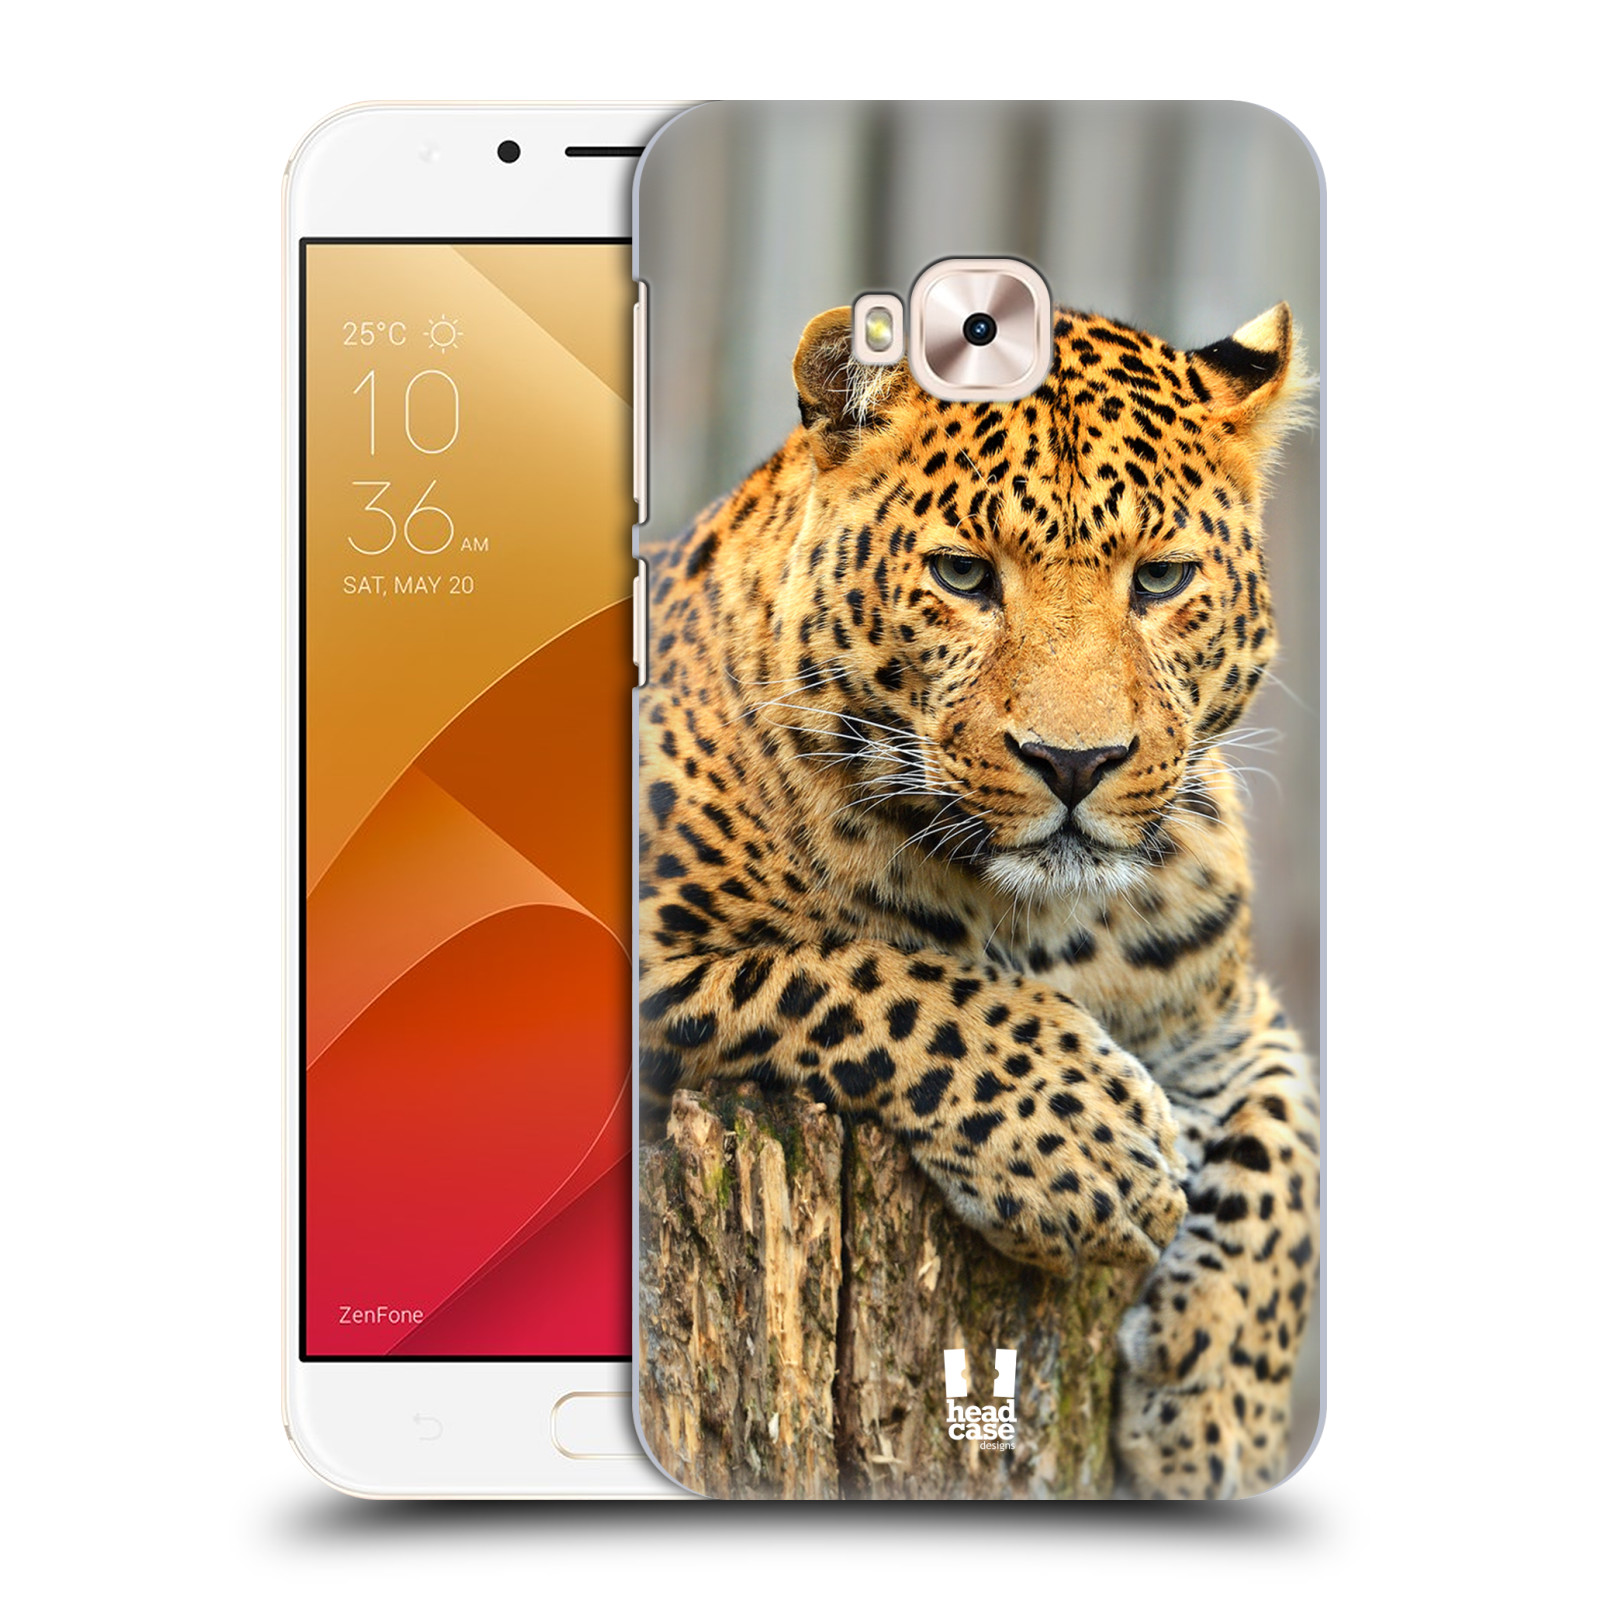 HEAD CASE plastový obal na mobil Asus Zenfone 4 Selfie Pro ZD552KL vzor Divočina, Divoký život a zvířata foto LEOPARD PORTRÉT